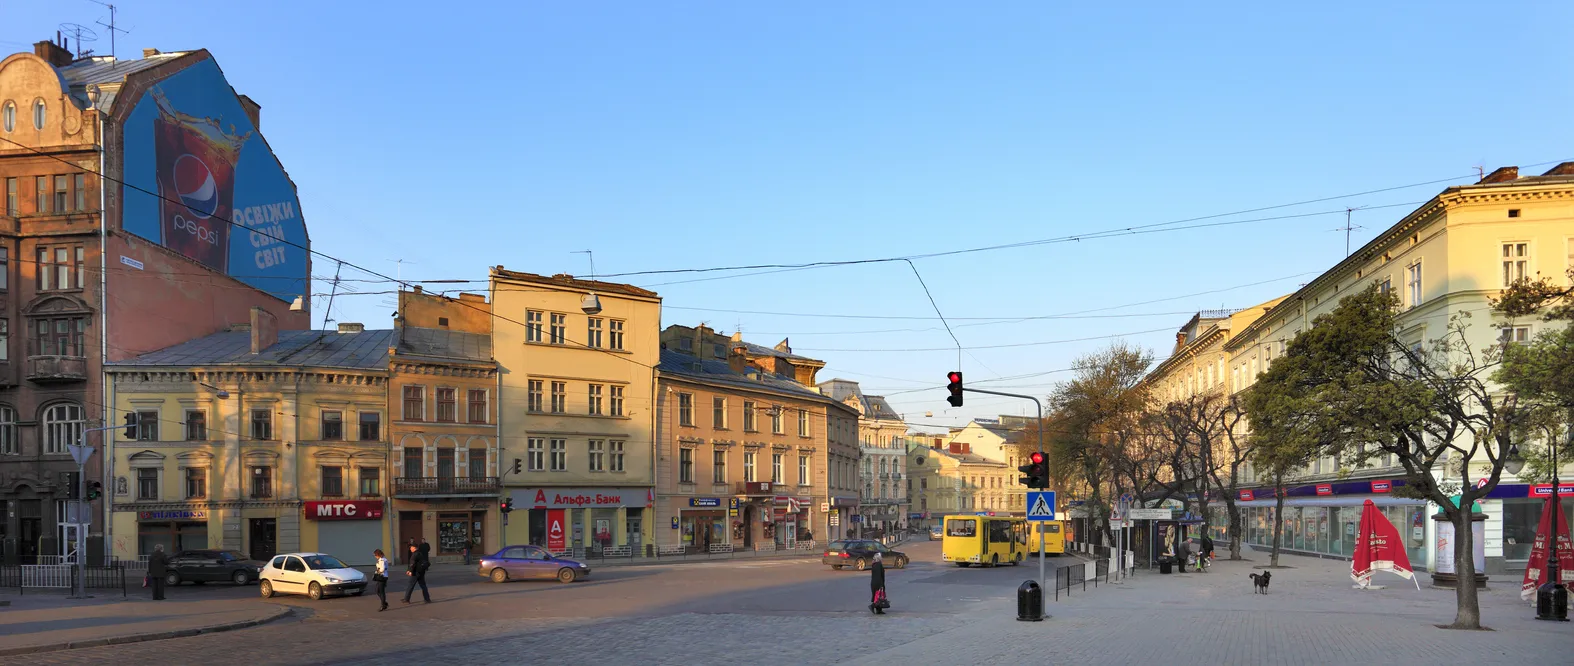  Le centre historique de Lviv  en Ukraine © iStock / Bernard Bialorucki